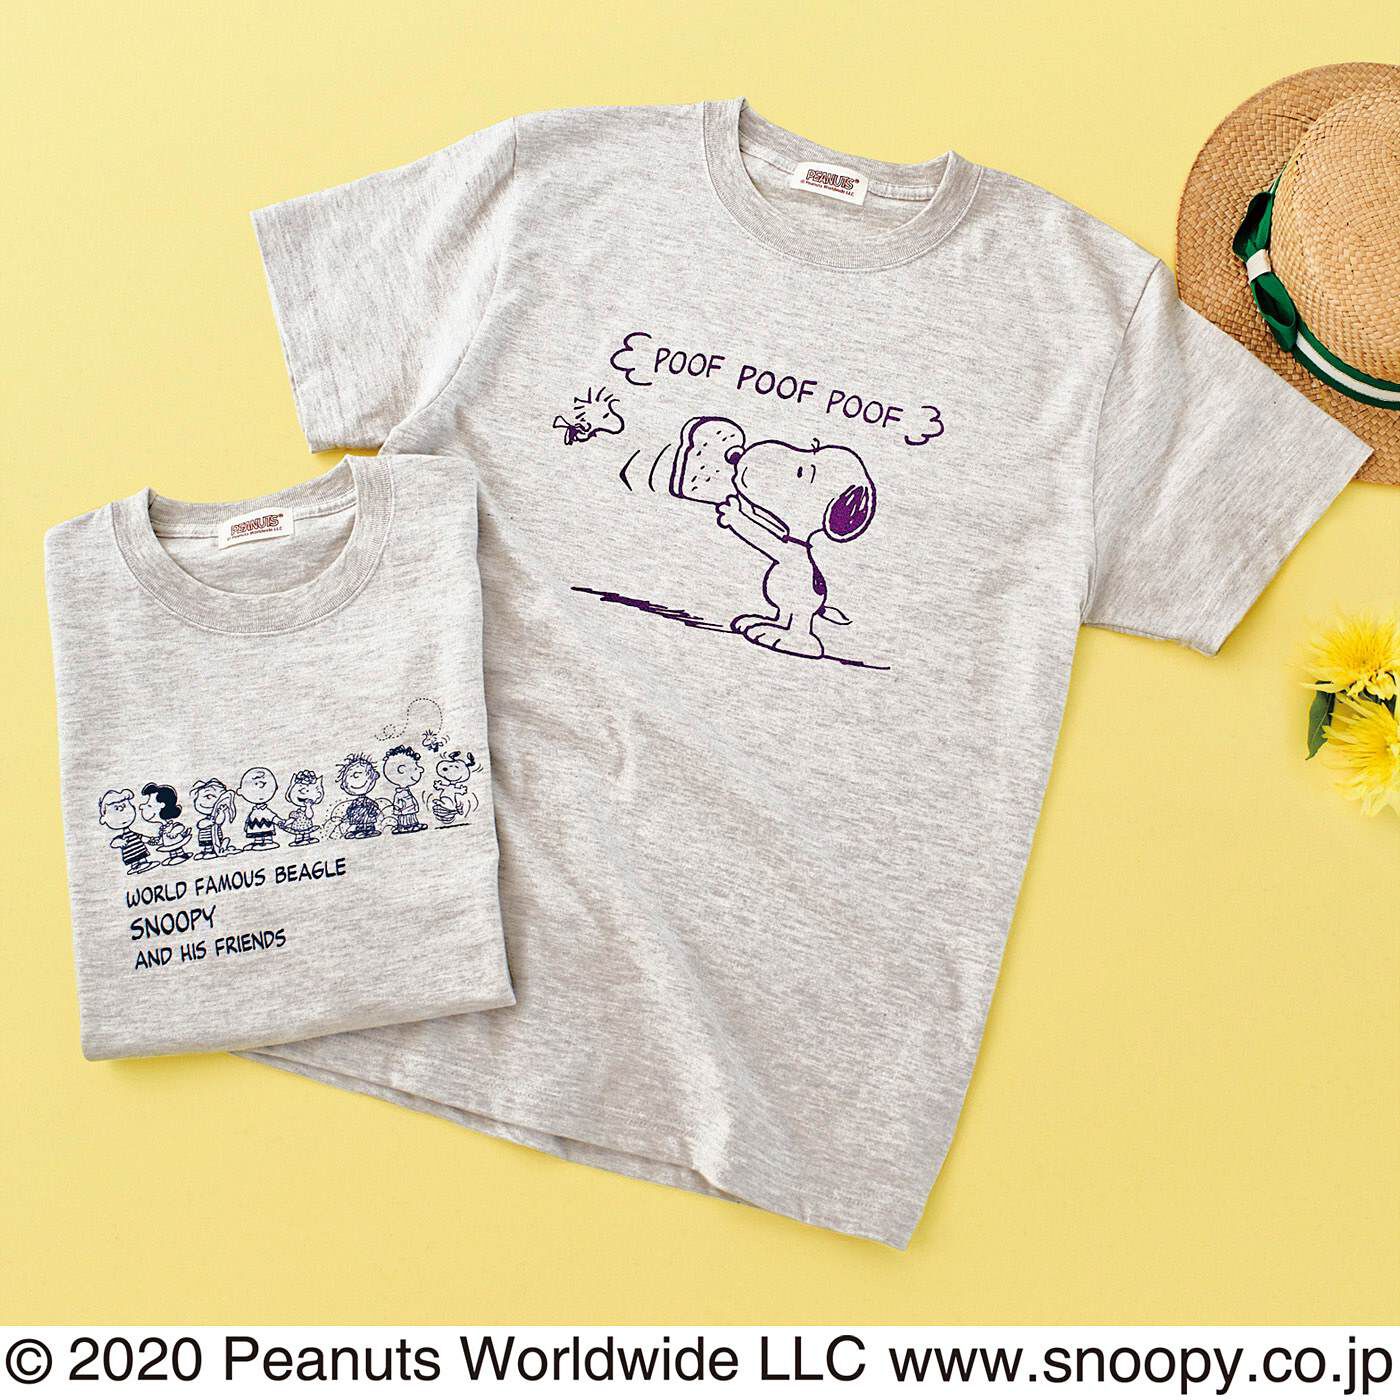 Real Stock|PEANUTS スヌーピーと仲間たち　ロゴ入りTシャツ〈スヌーピーときょうだい〉|※お届けするデザインとは異なります。